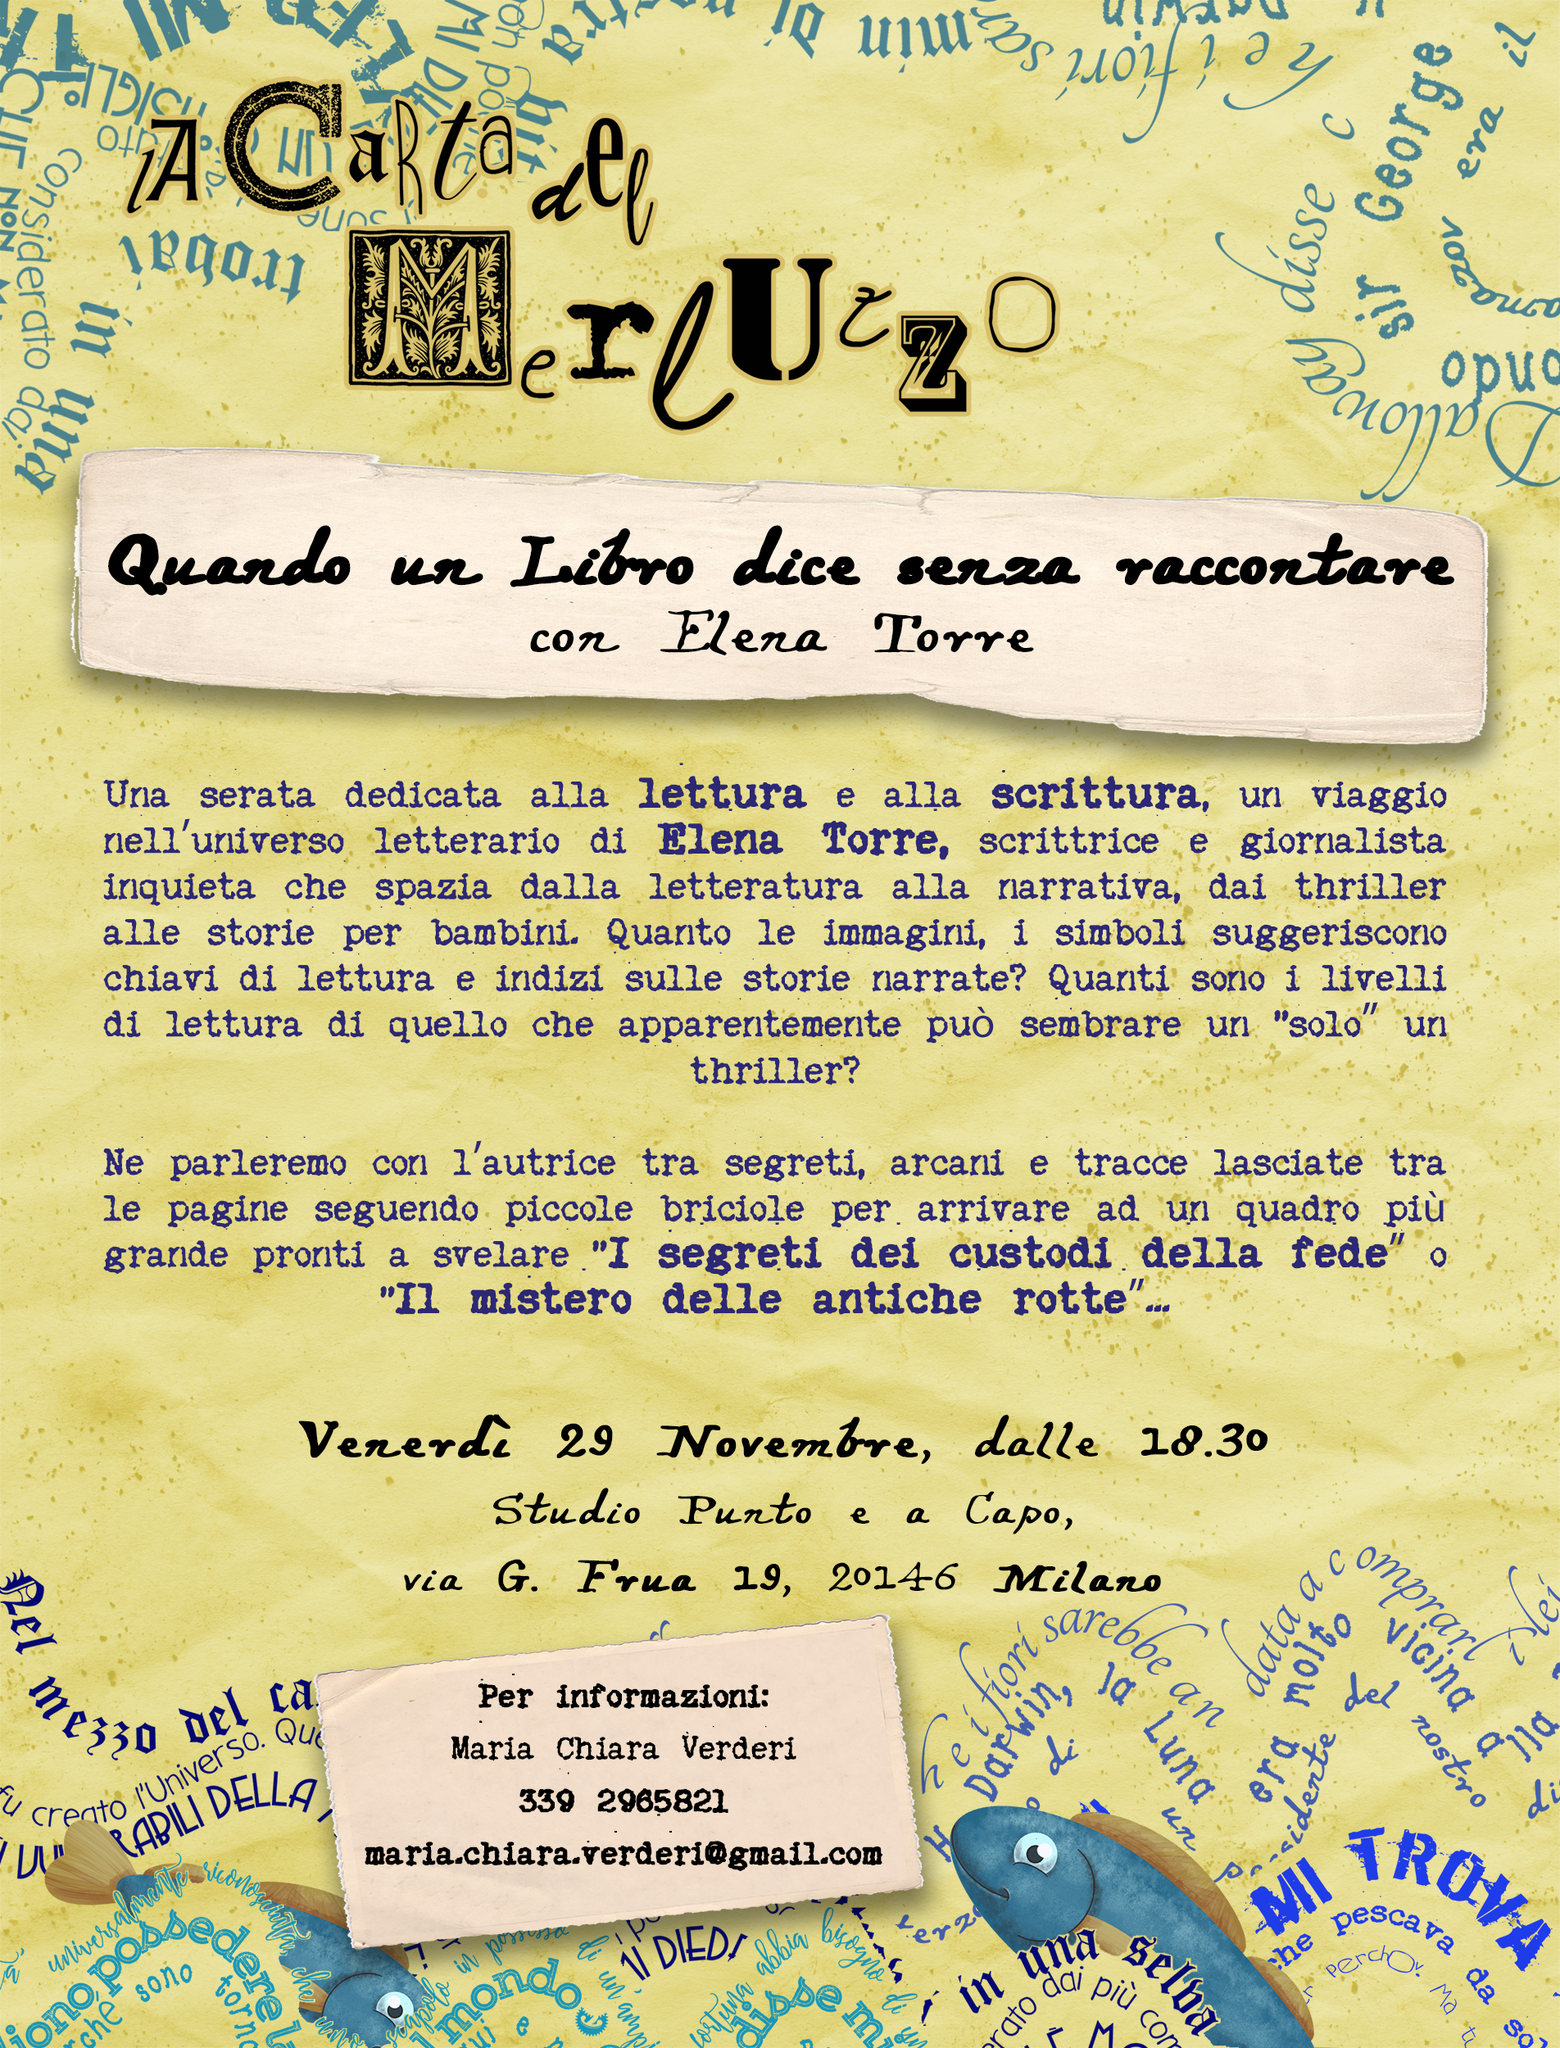 Milano, 29 Novembre 2019, per La Carta del Merluzzo serata dal titolo "Quando un Libro dice senza raccontare" con Elena Torre 